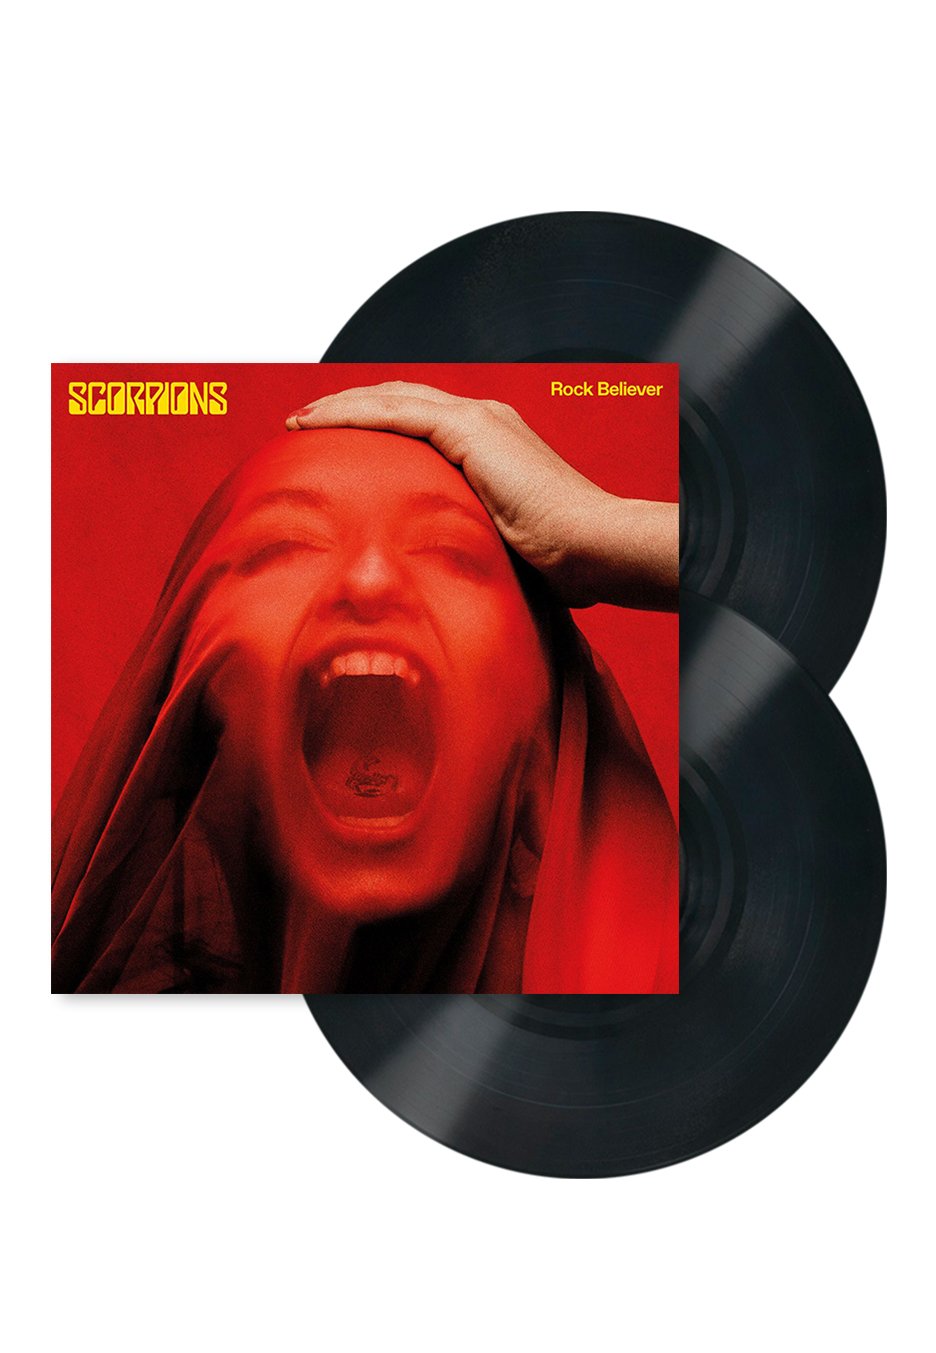 Scorpions - Rock Believer Ltd. Deluxe - 2 Vinyl